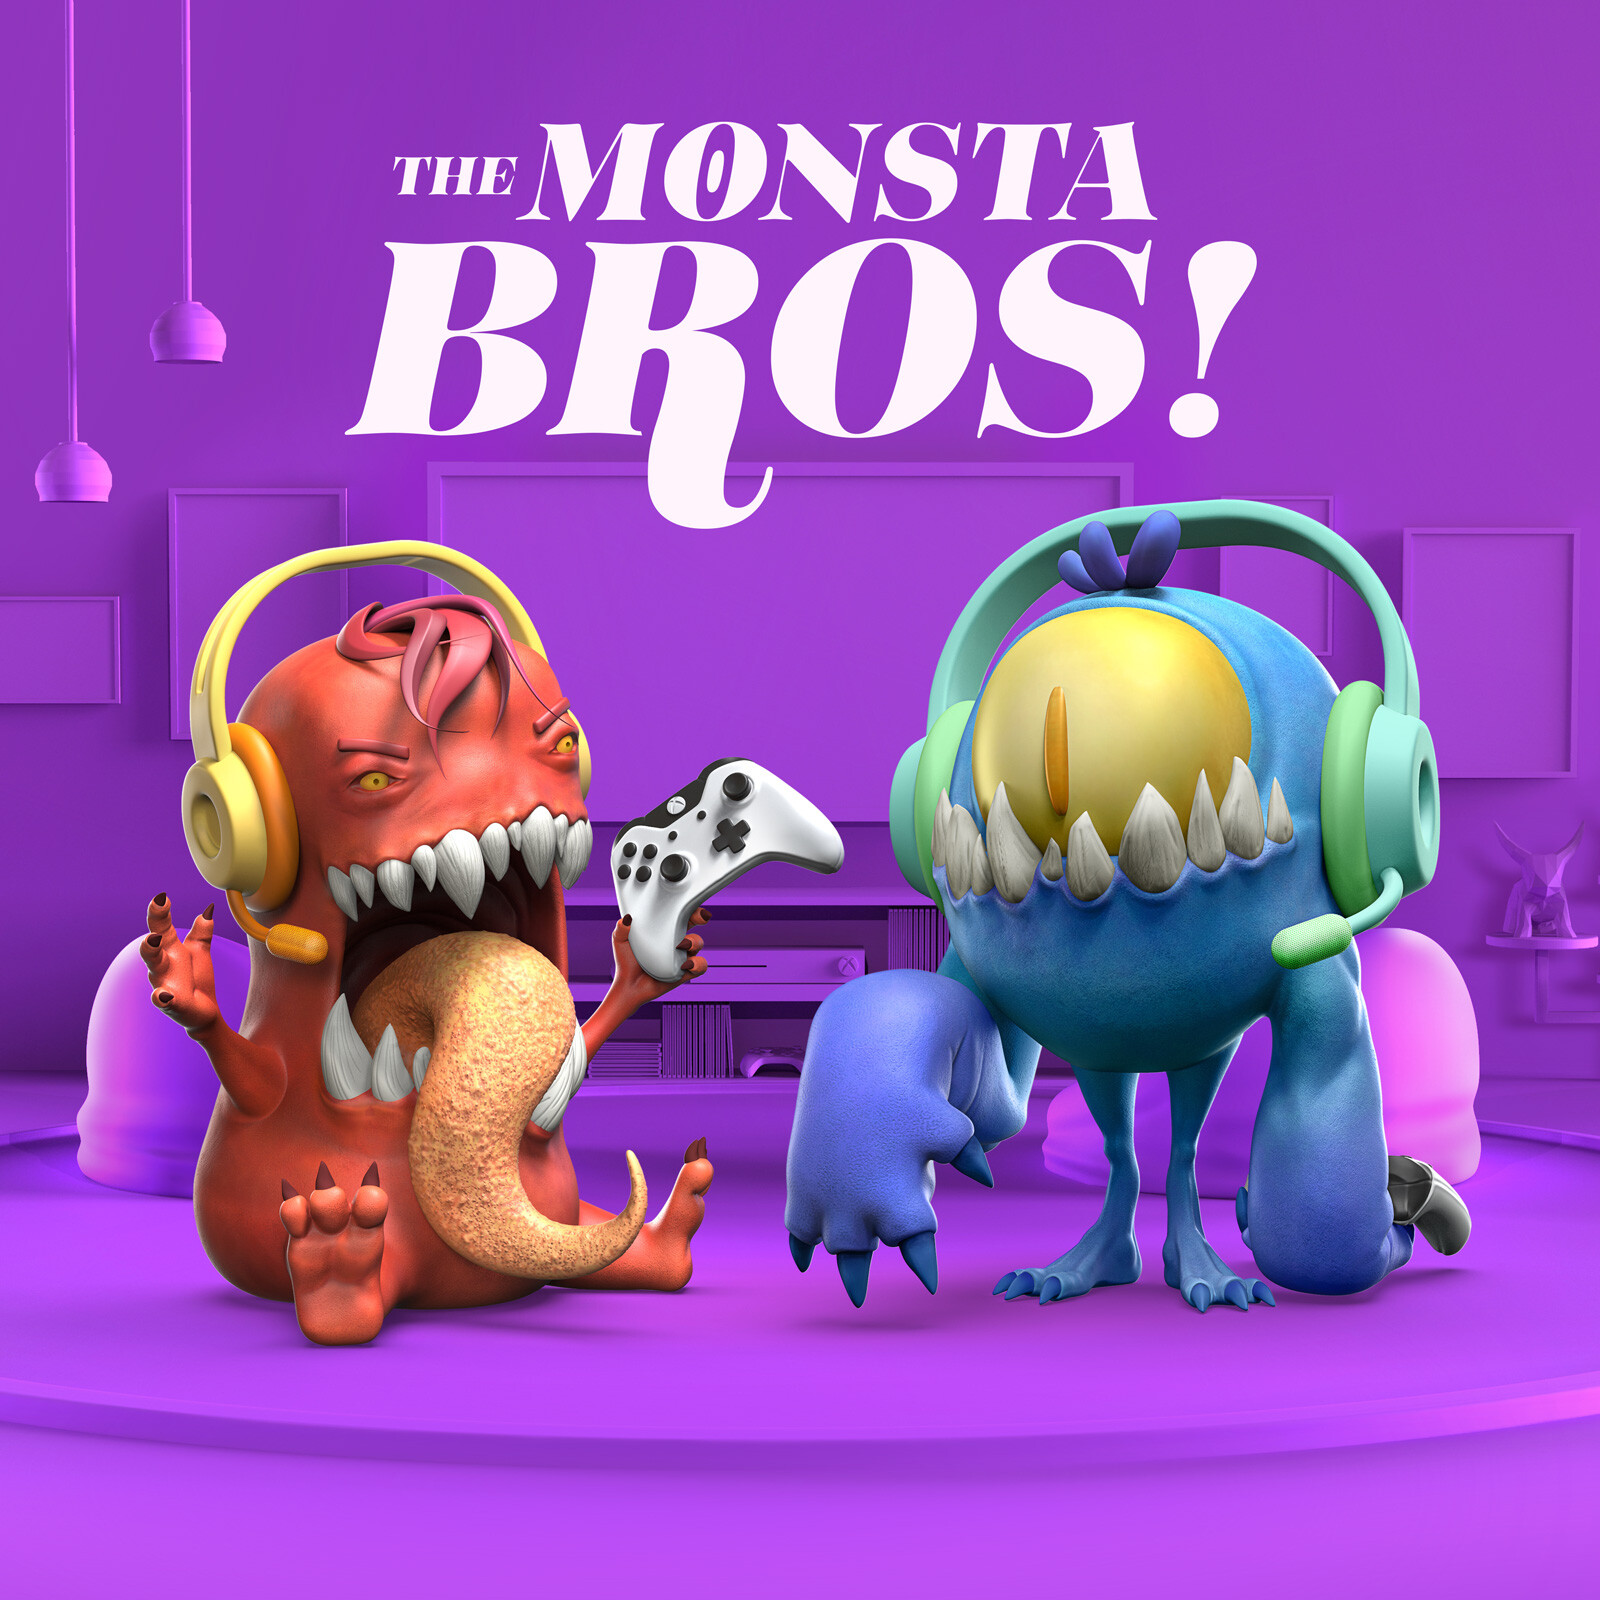 The Monsta Bros!